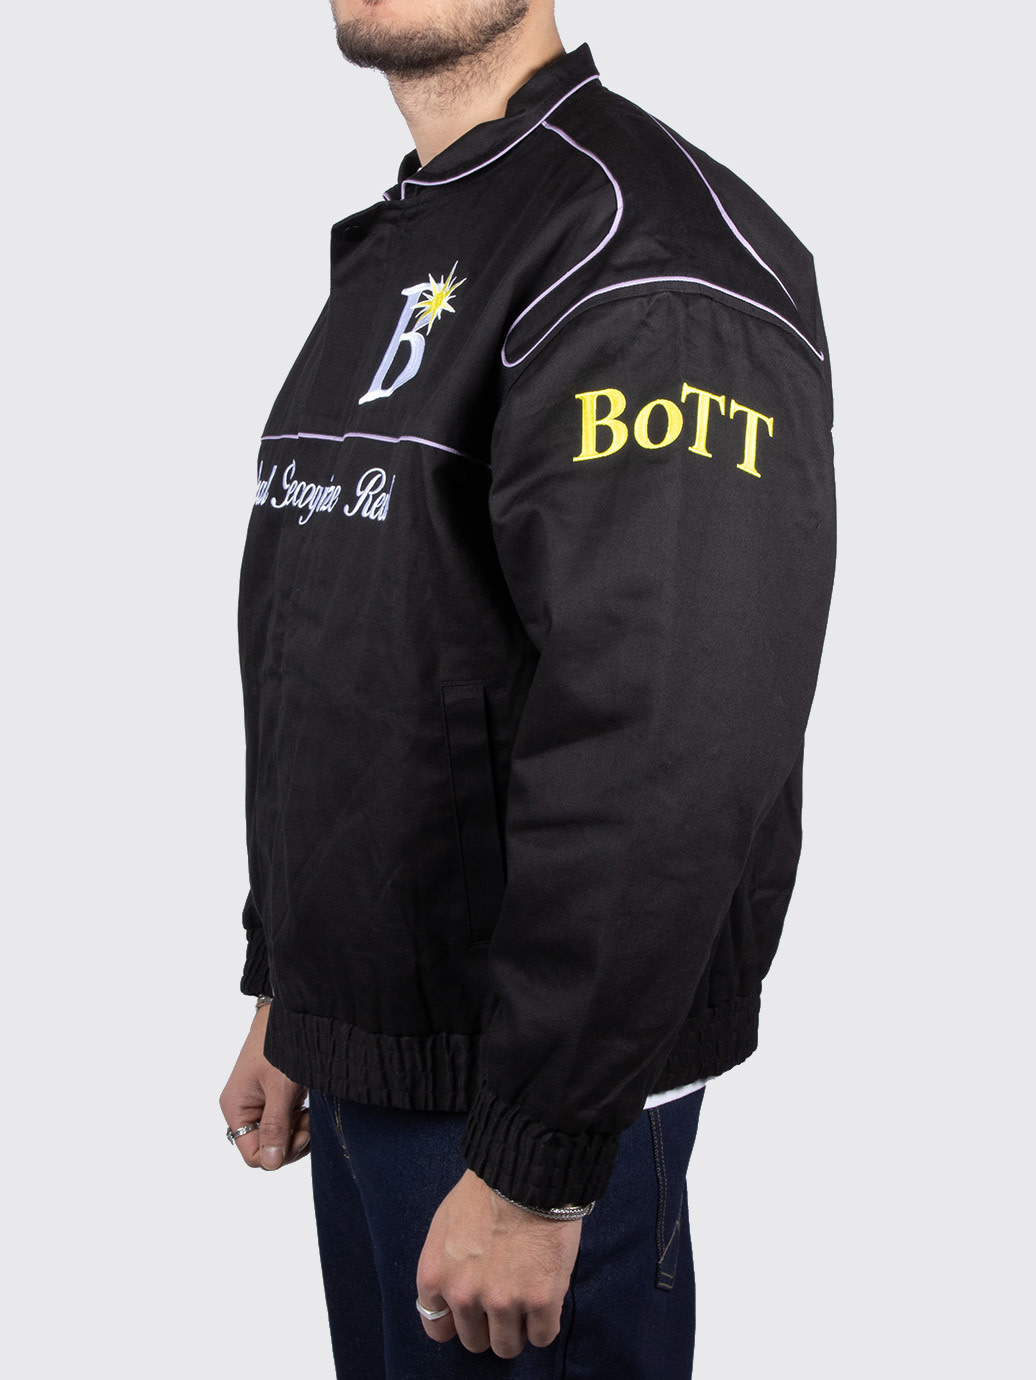 大注目 Jacket BoTT Cotton Racing Racing Jacket メンズ